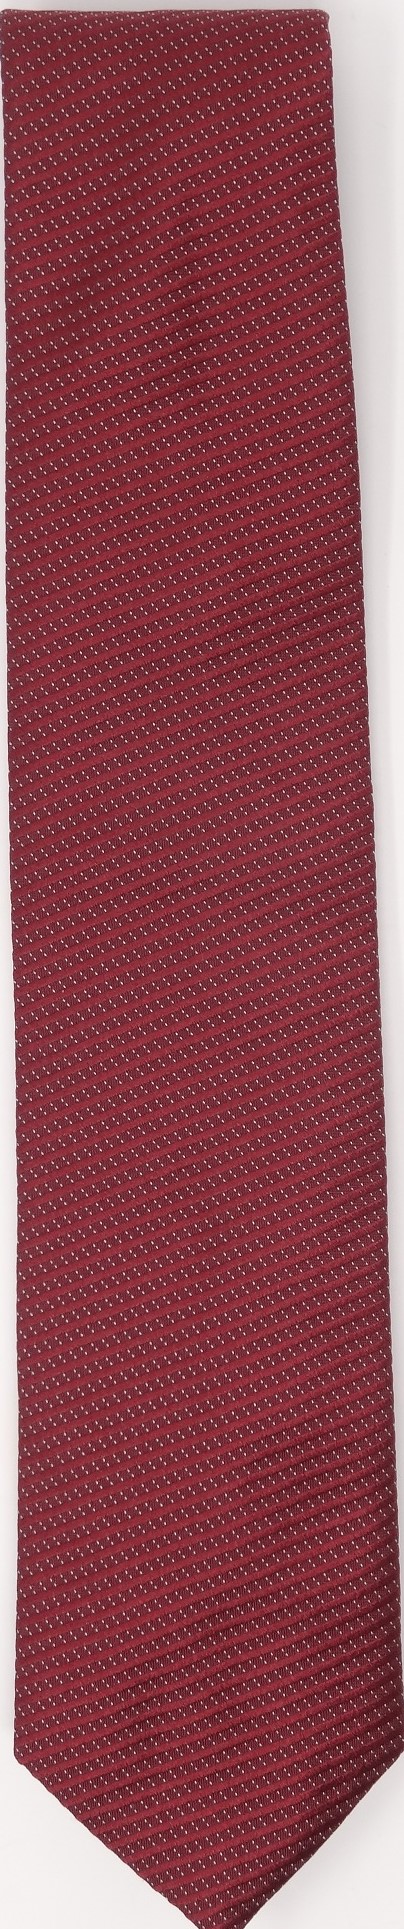 Krawatte (reine Seide)